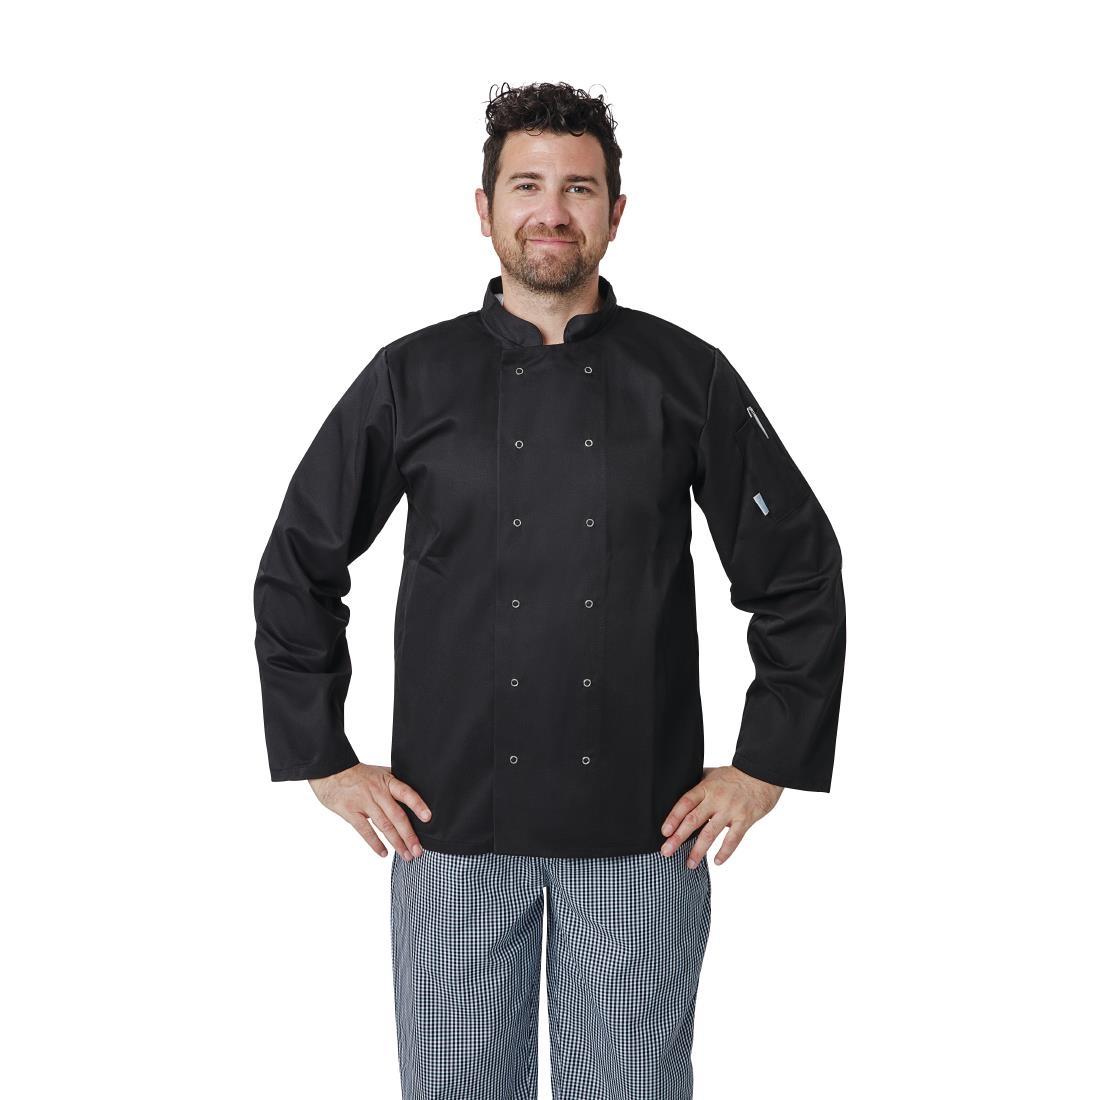 Whites Vegas Unisex Chefs Jacket Long Sleeve Black 5XL - A438-5XL  - 5